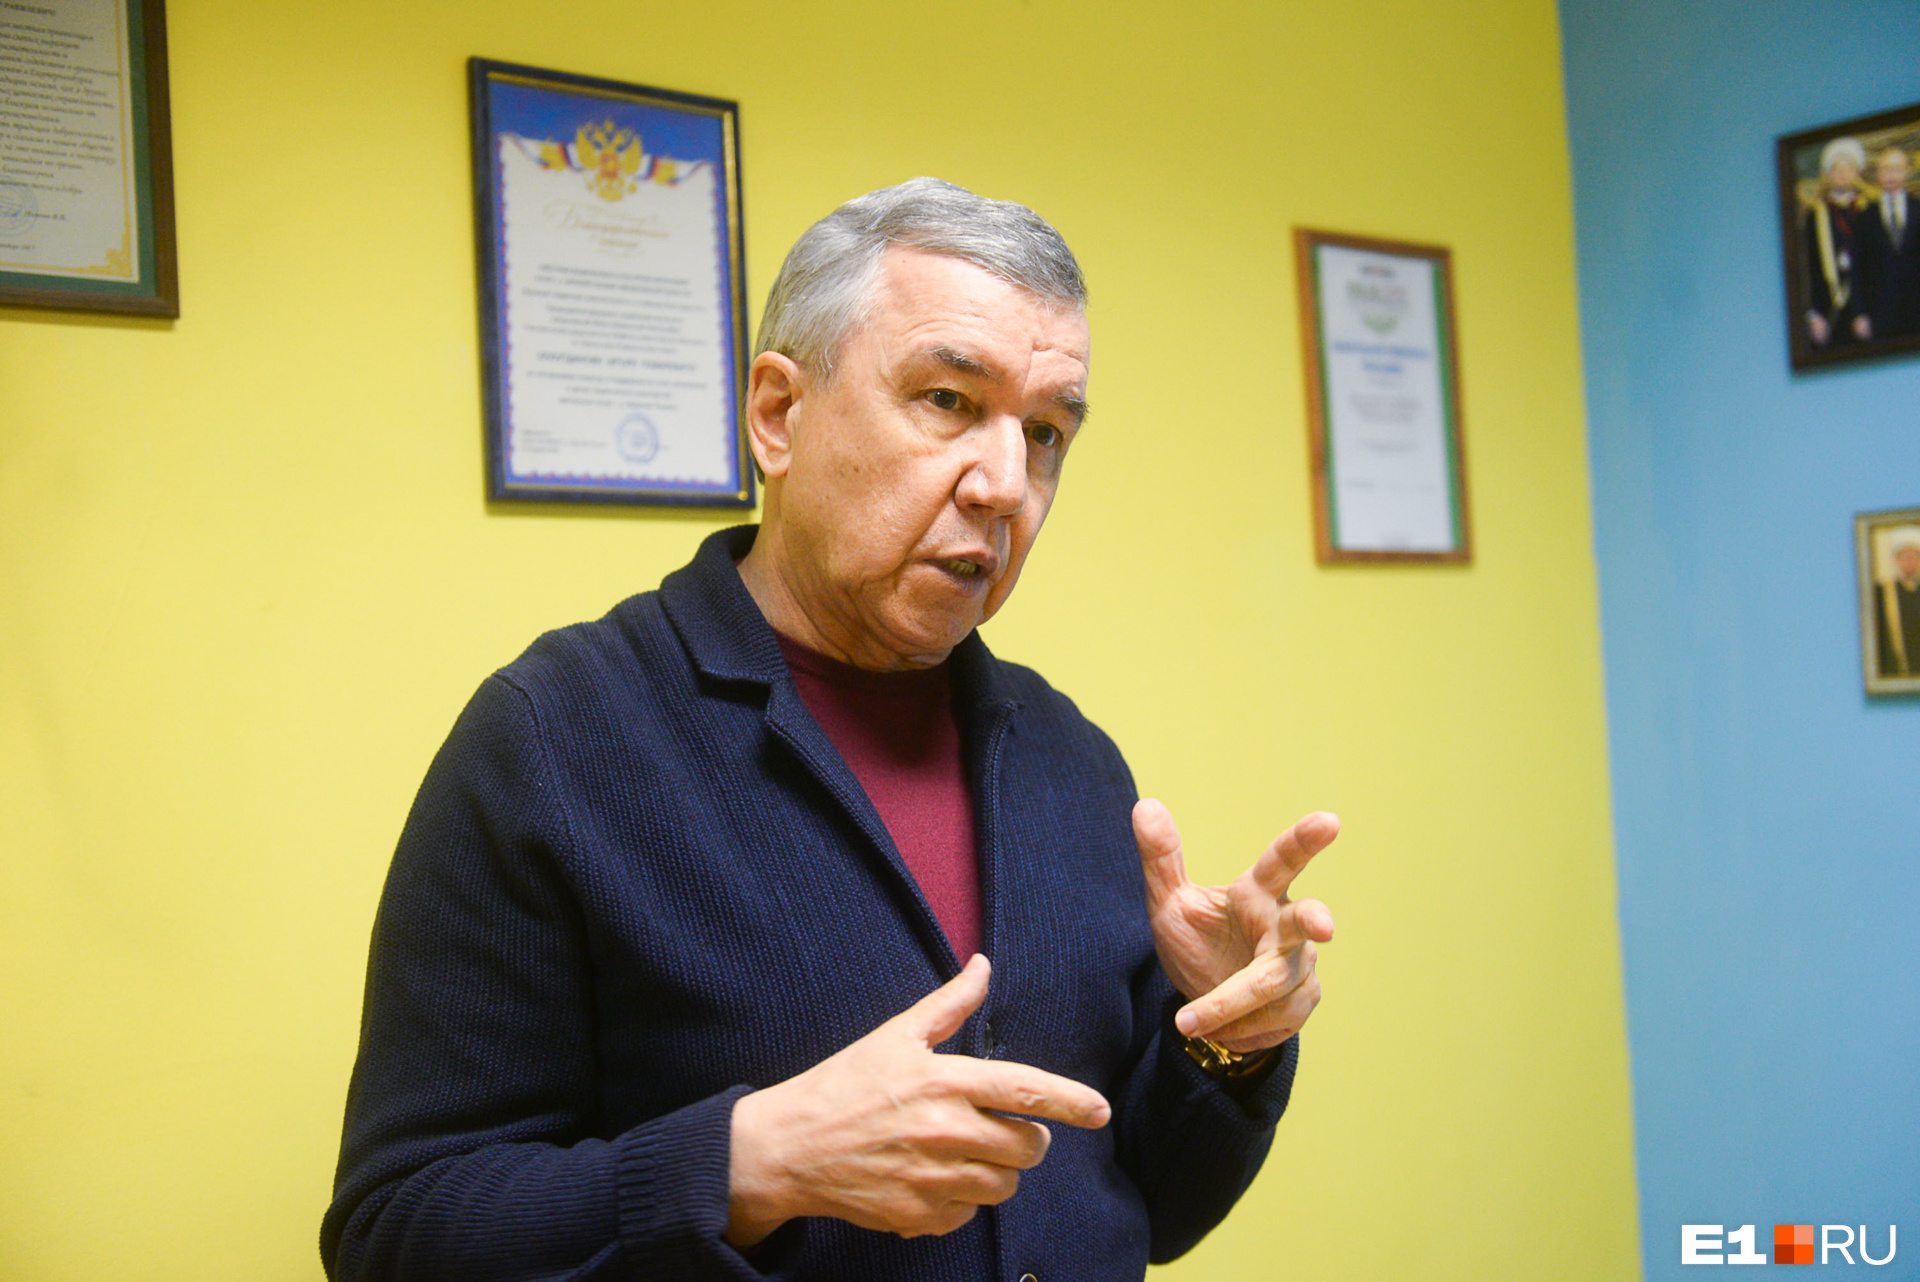 Наиль Шаймарданов говорит, что поддерживал губернатора Евгения Куйвашева, но считает, что работу по межнациональным отношениям местные власти провалили